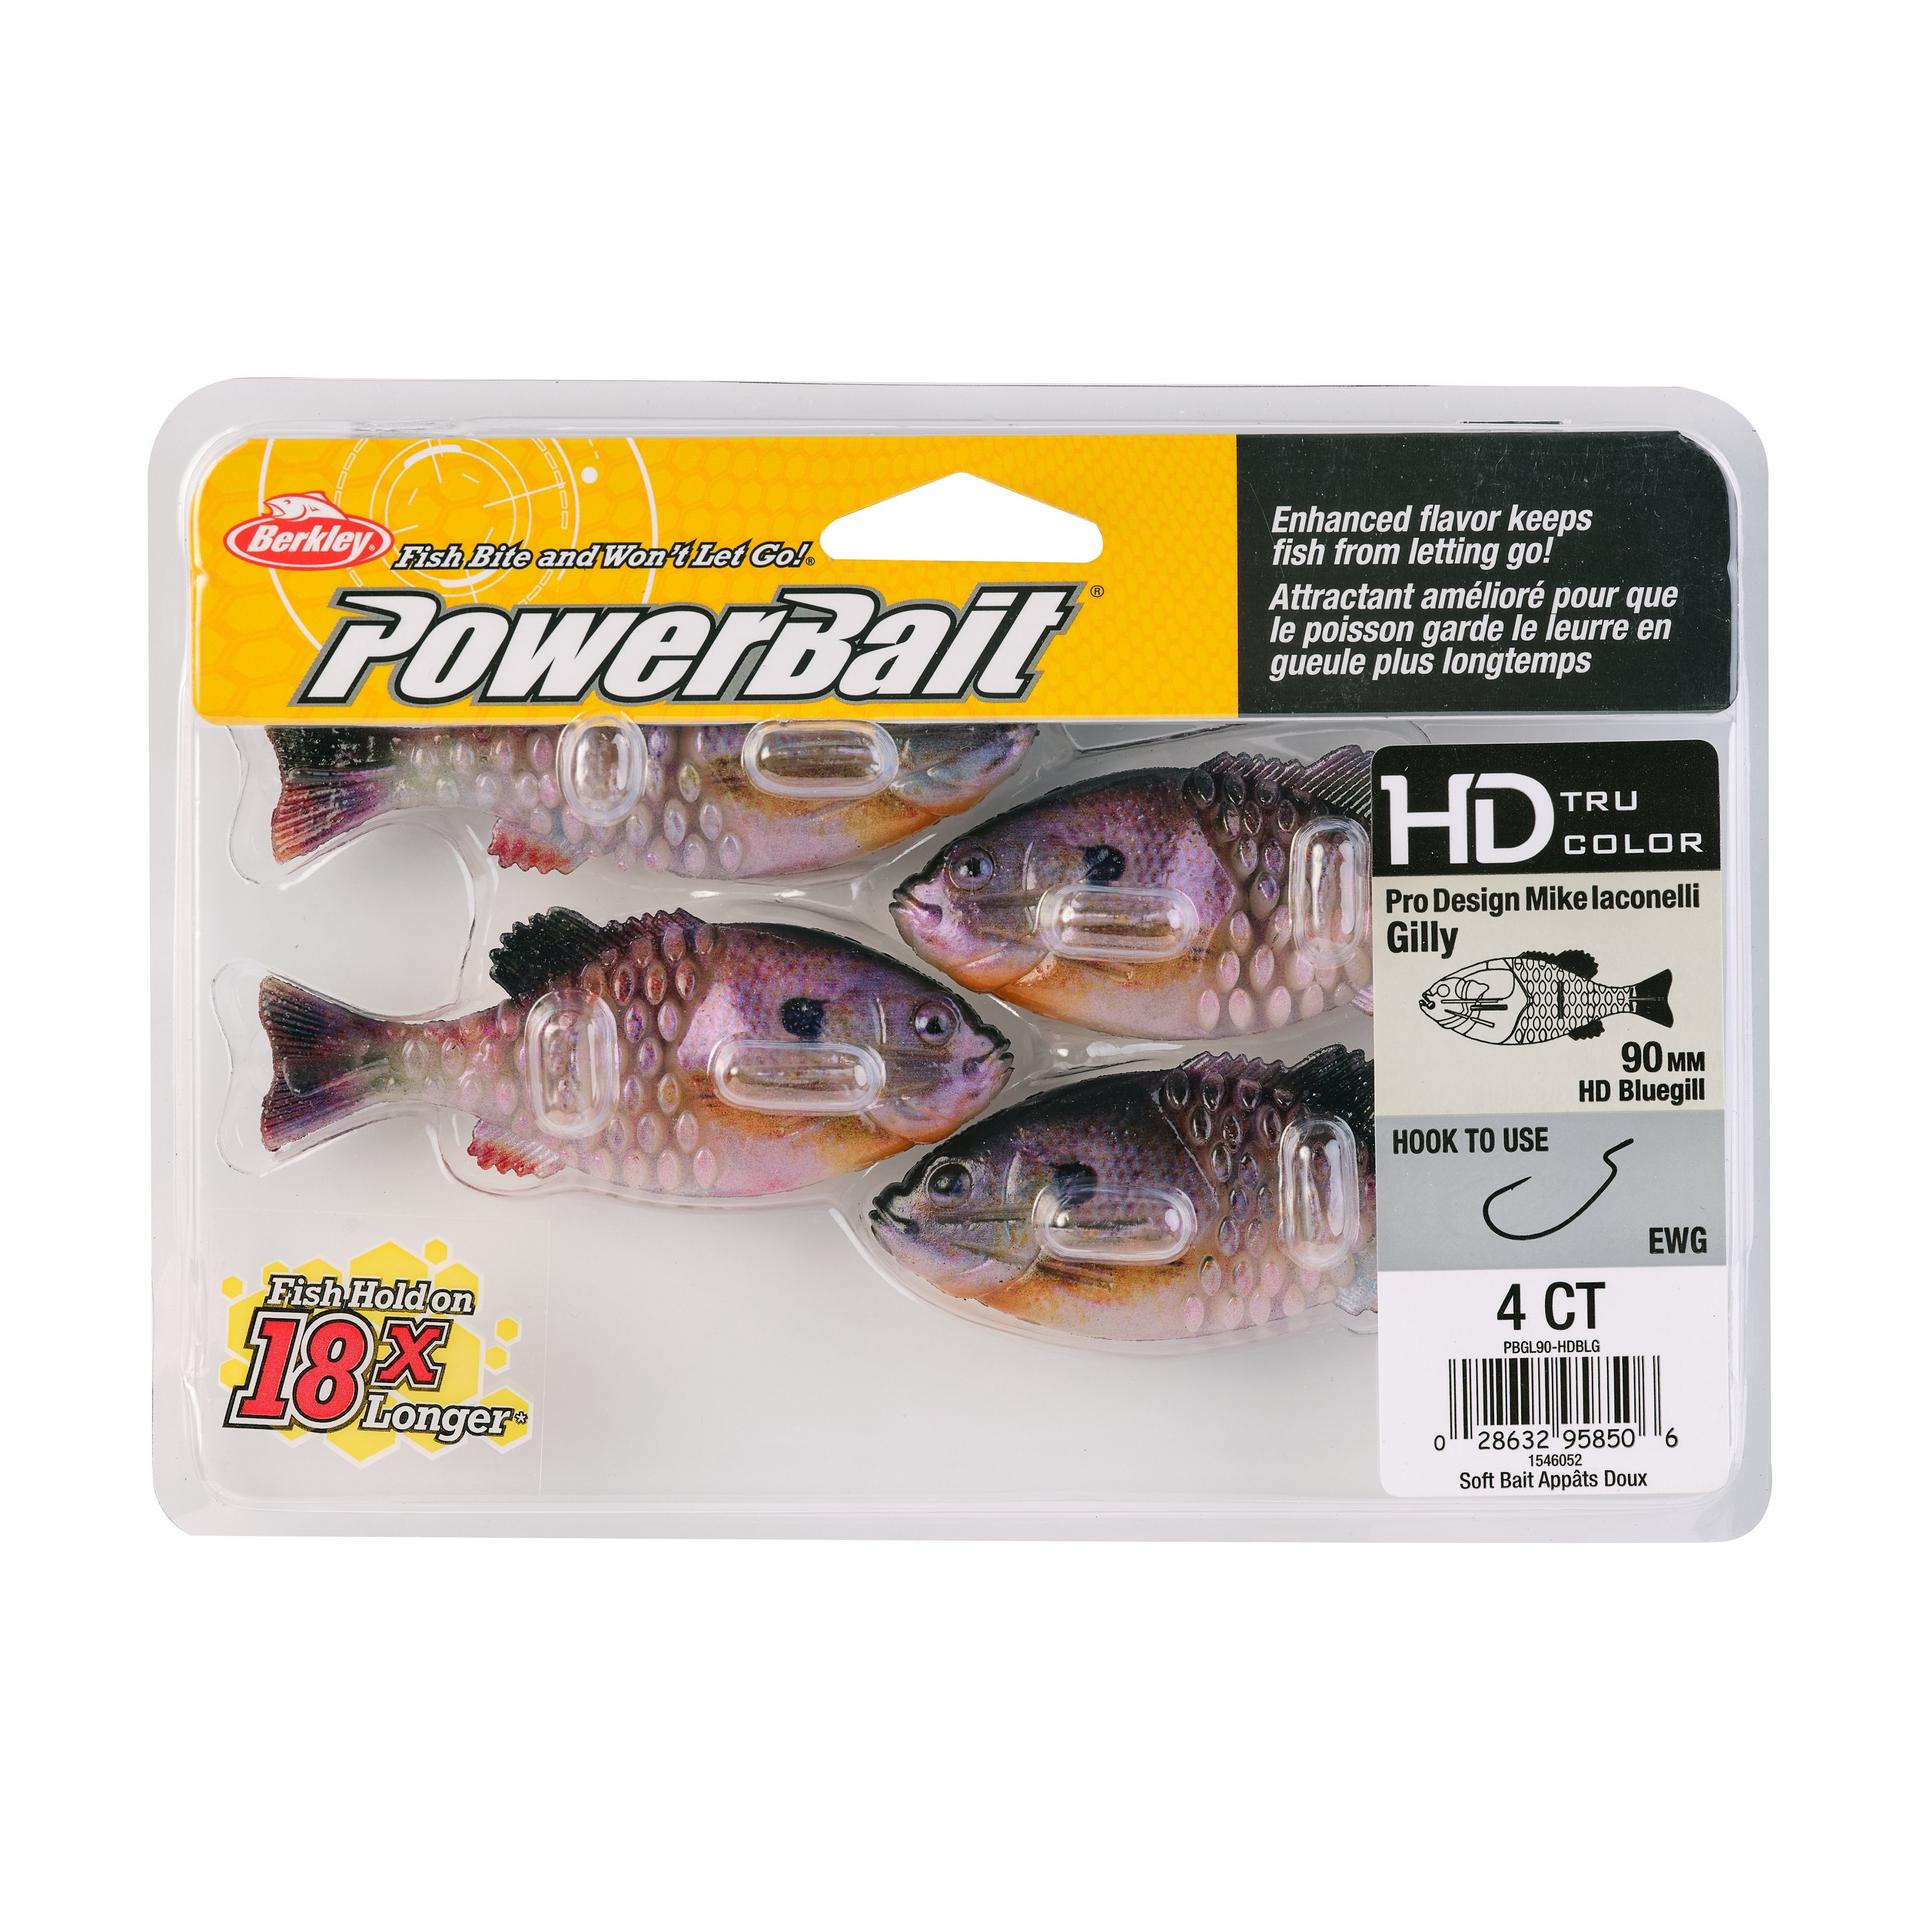 PowerBaitGilly HDBluegill 90mm PKG | Berkley Fishing